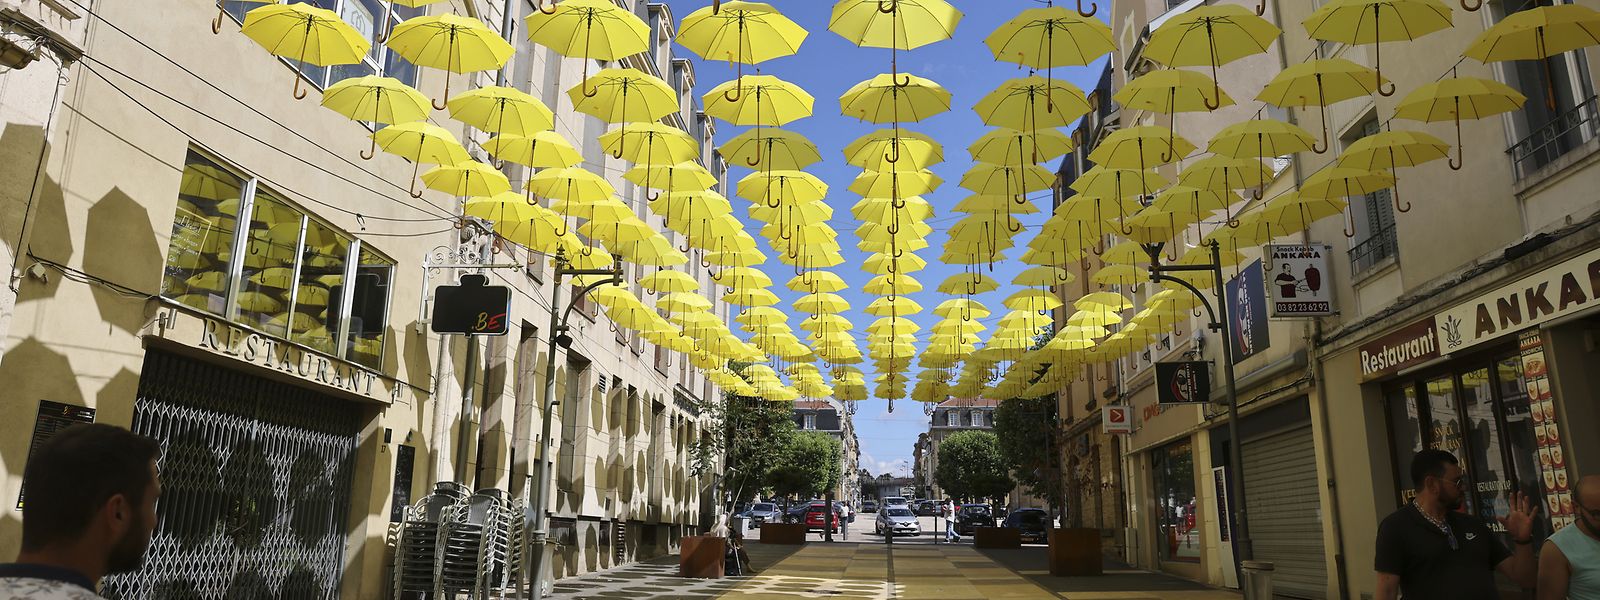 Une nuée de parapluies jaunes a été suspendue au-dessus de la rue piétonne Aristide-Briand.